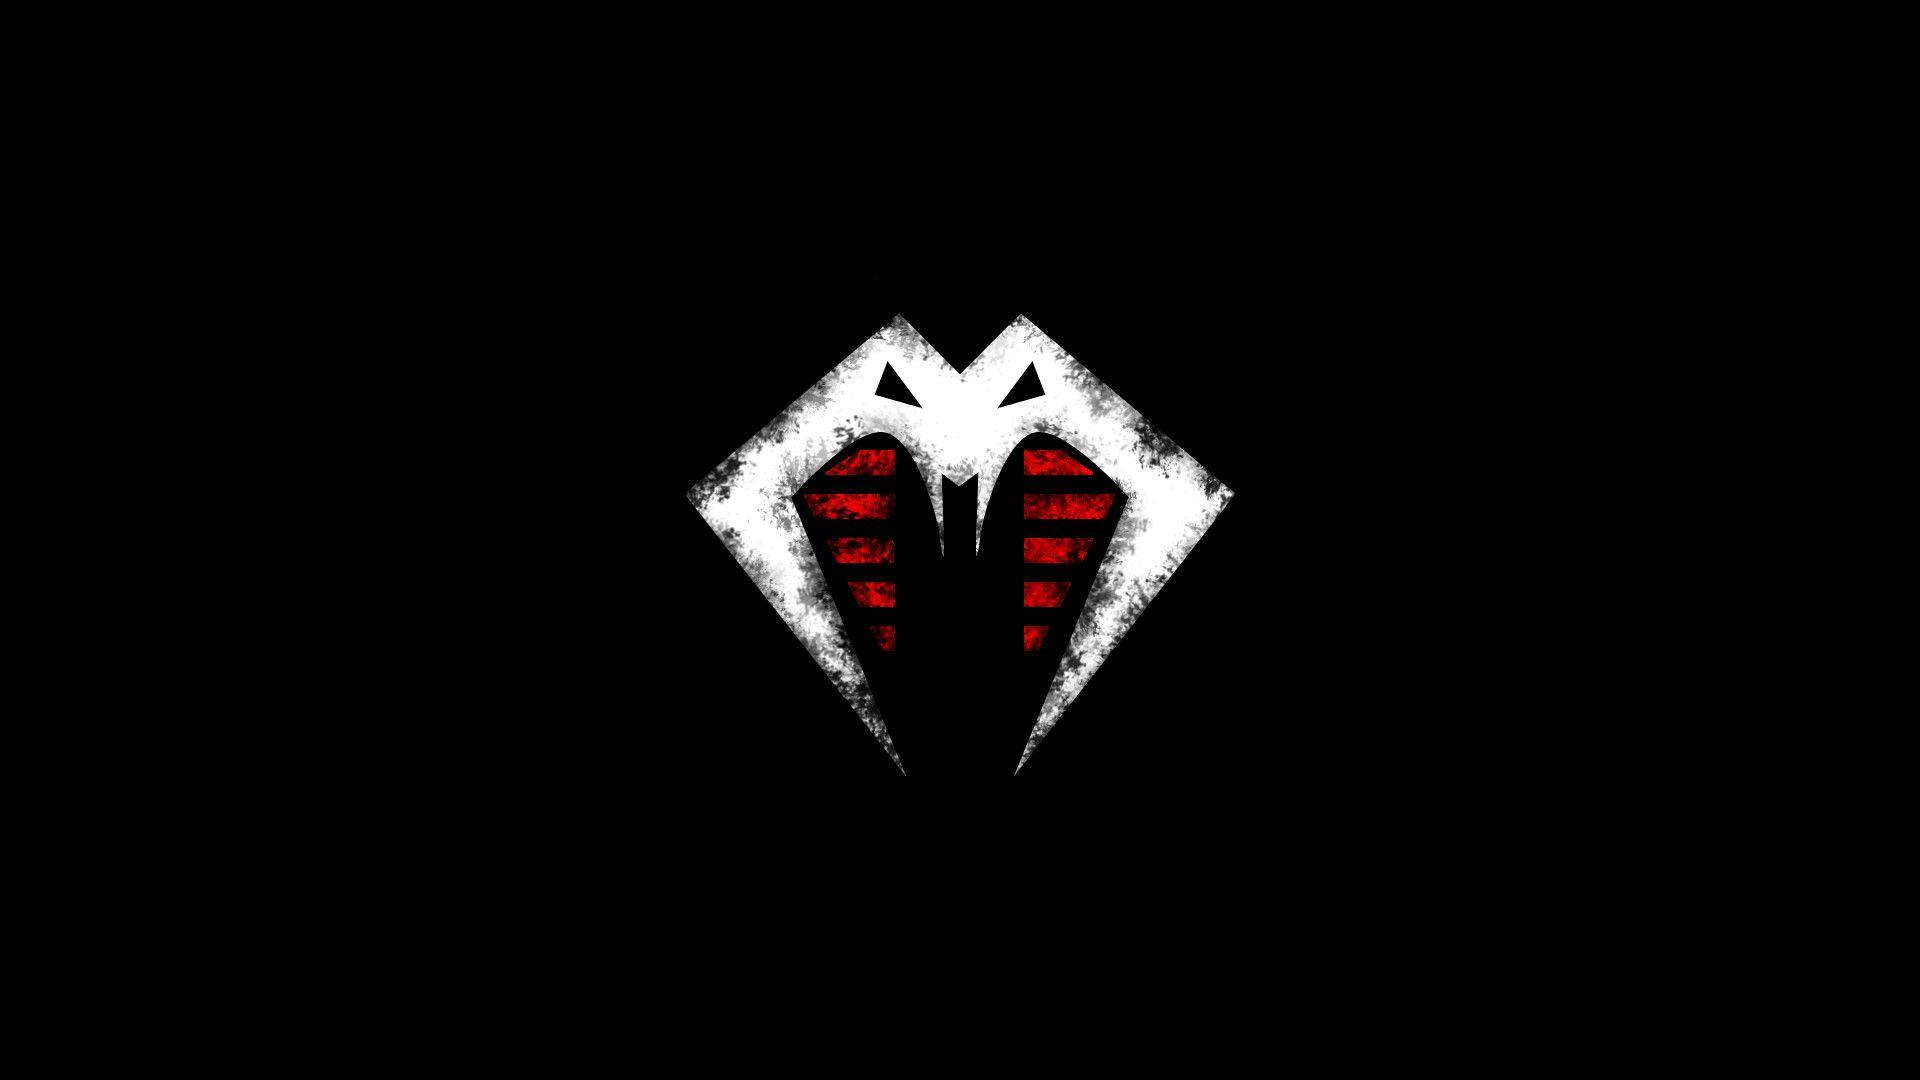 I redesigned the Cobra logo